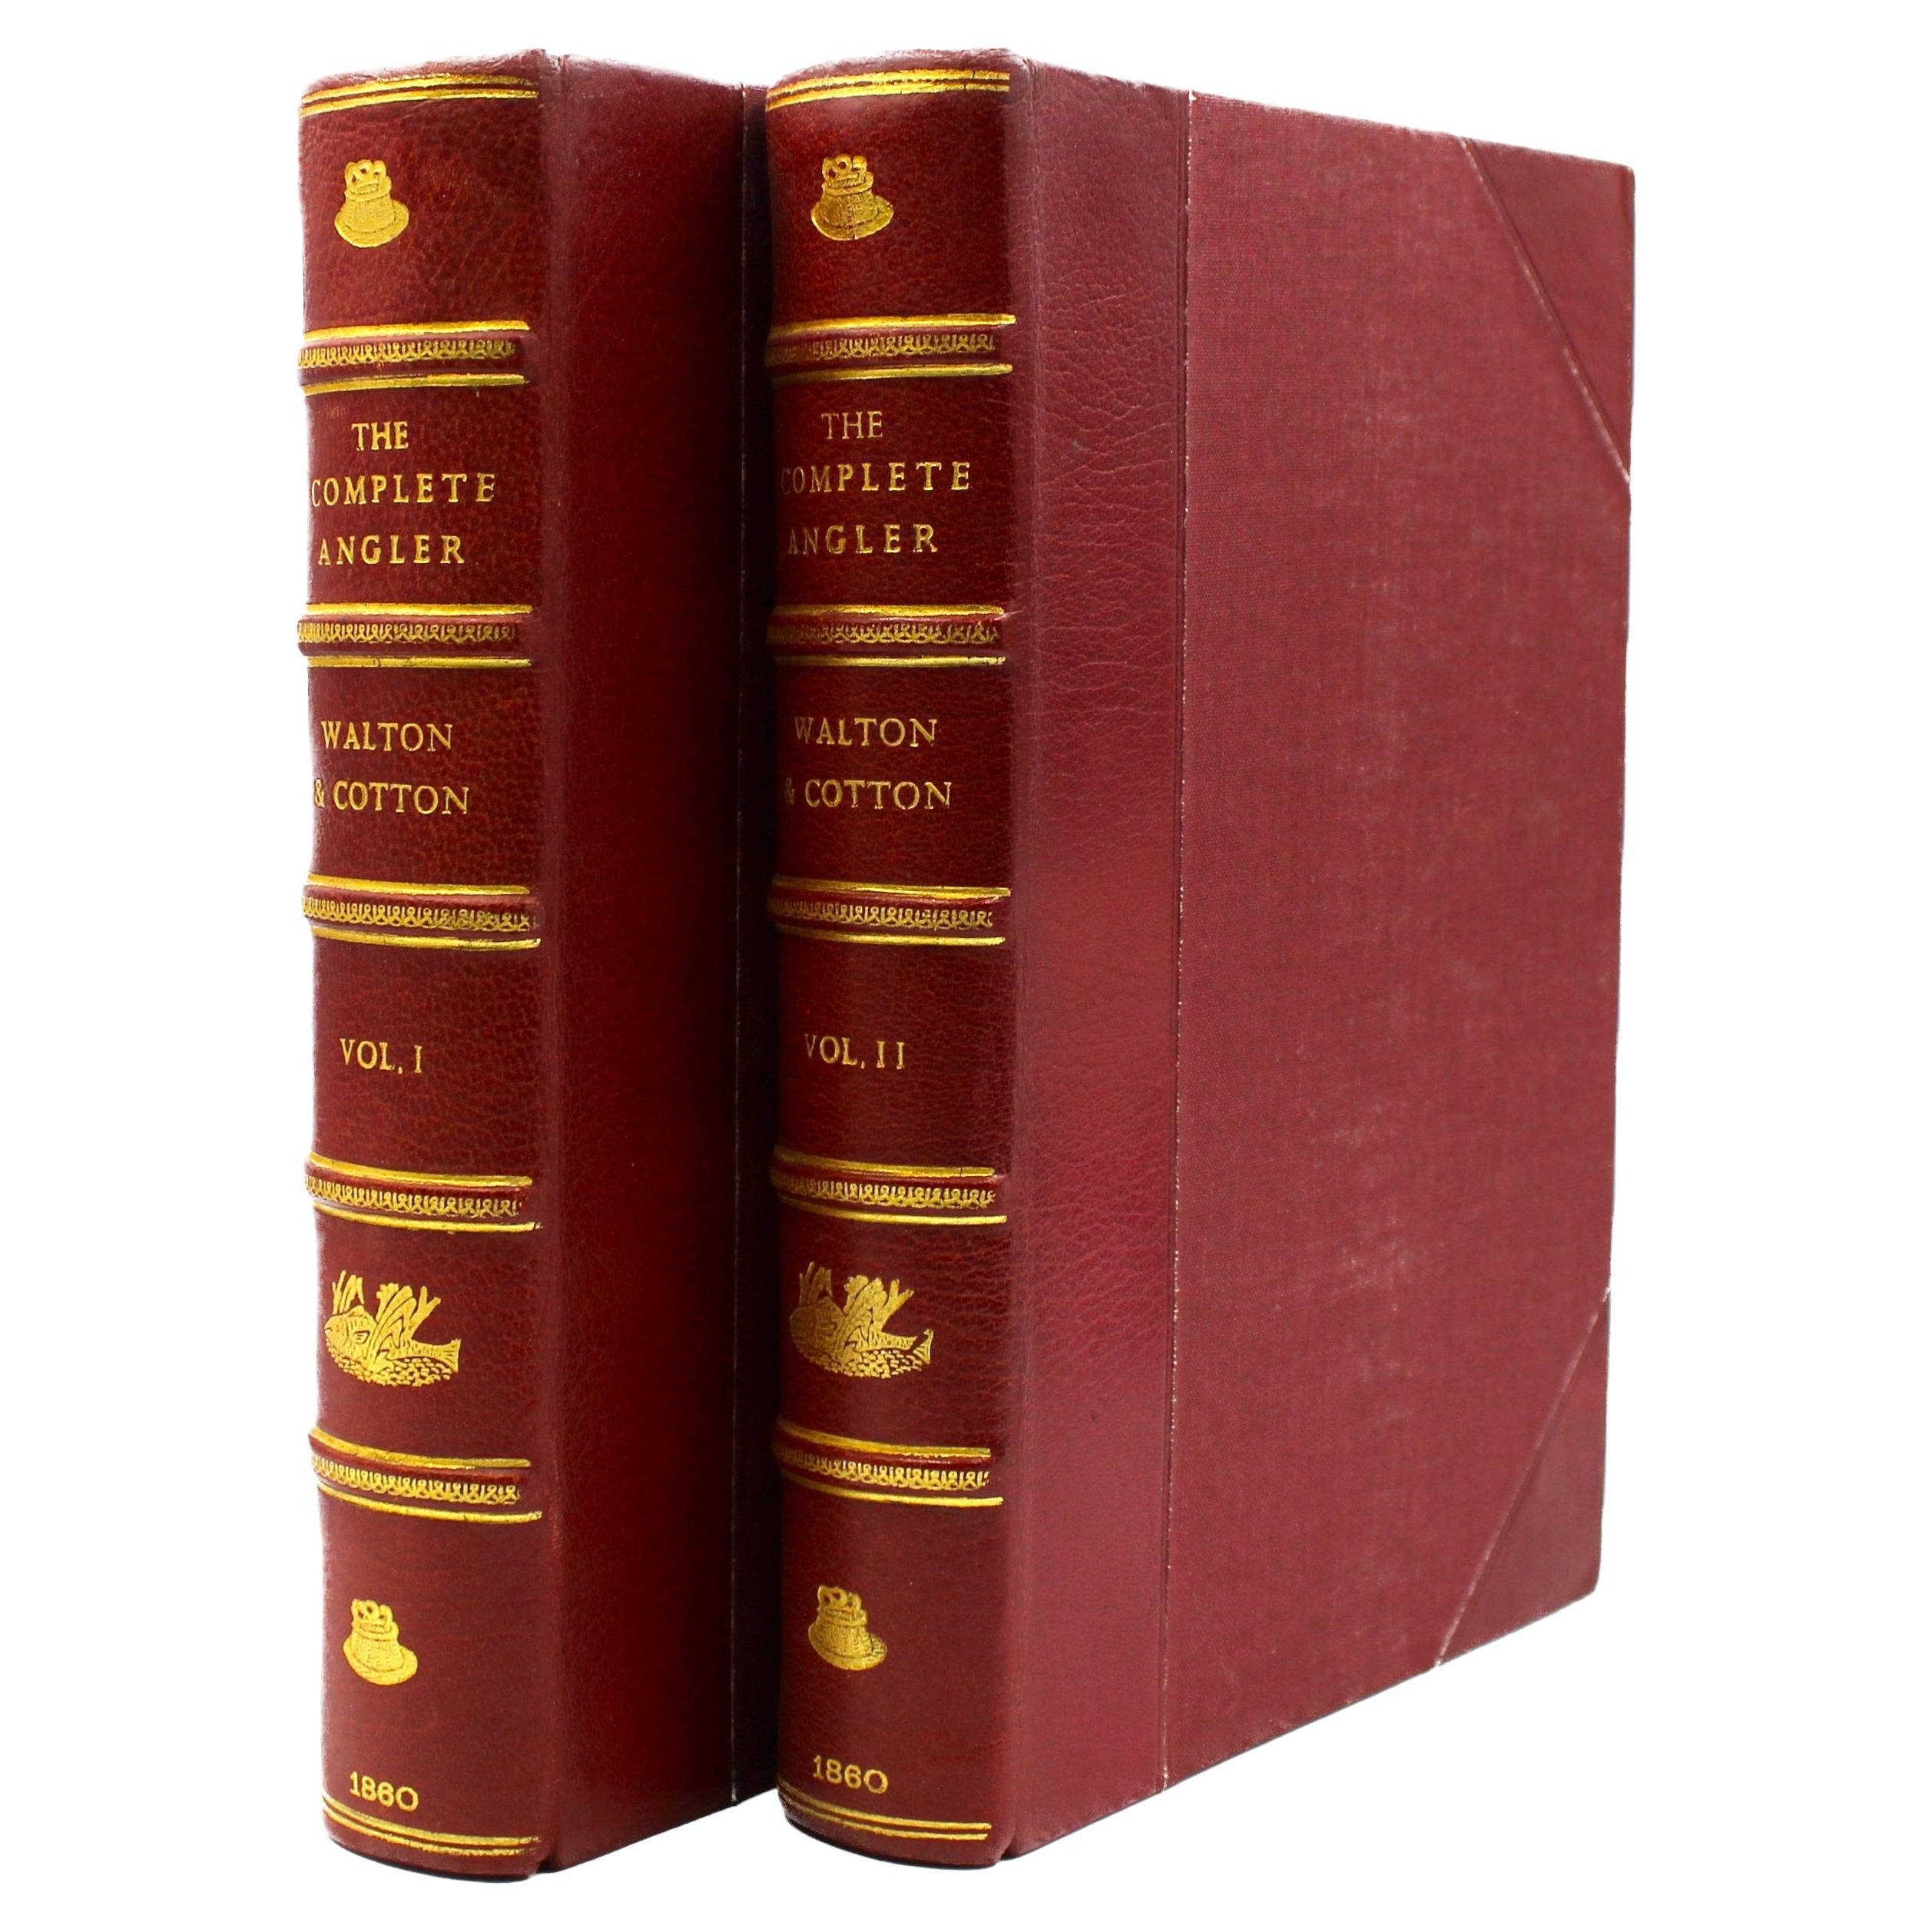 The Complete Angler von Izaak Walton und Charles Cotton, herausgegeben von Harris Nicolas